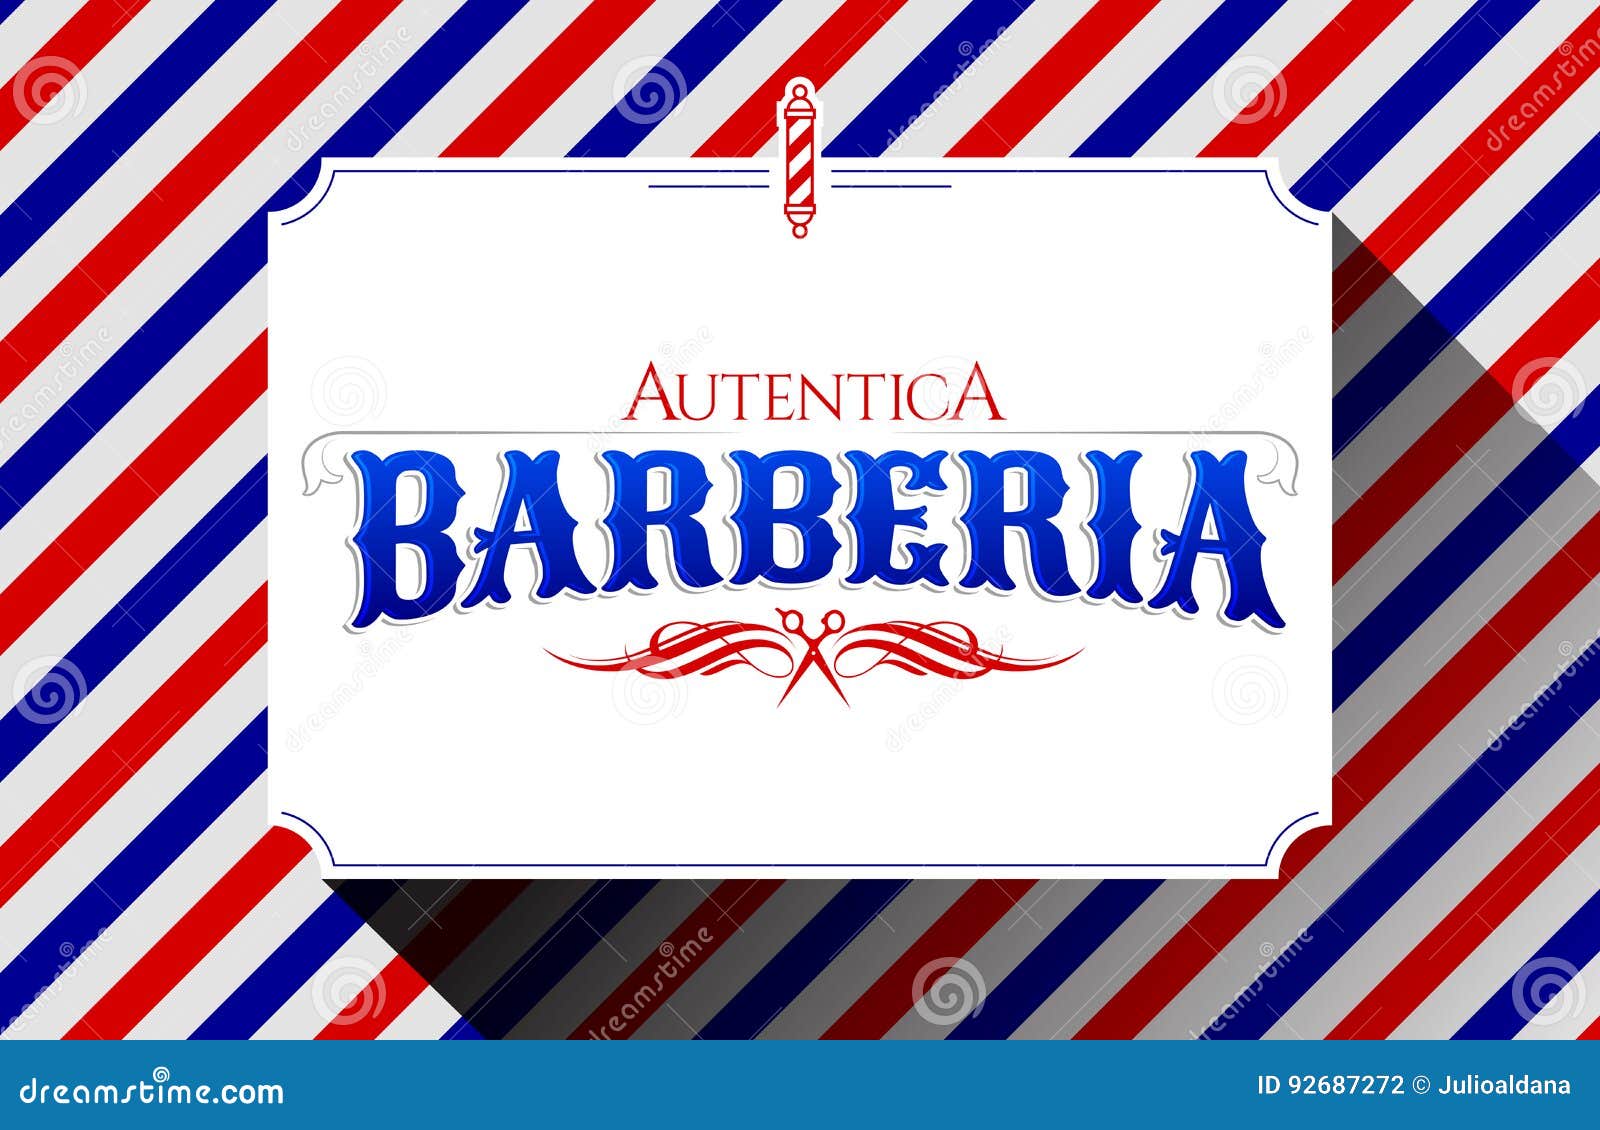 barberia autentica, authentic barbershop spanish text